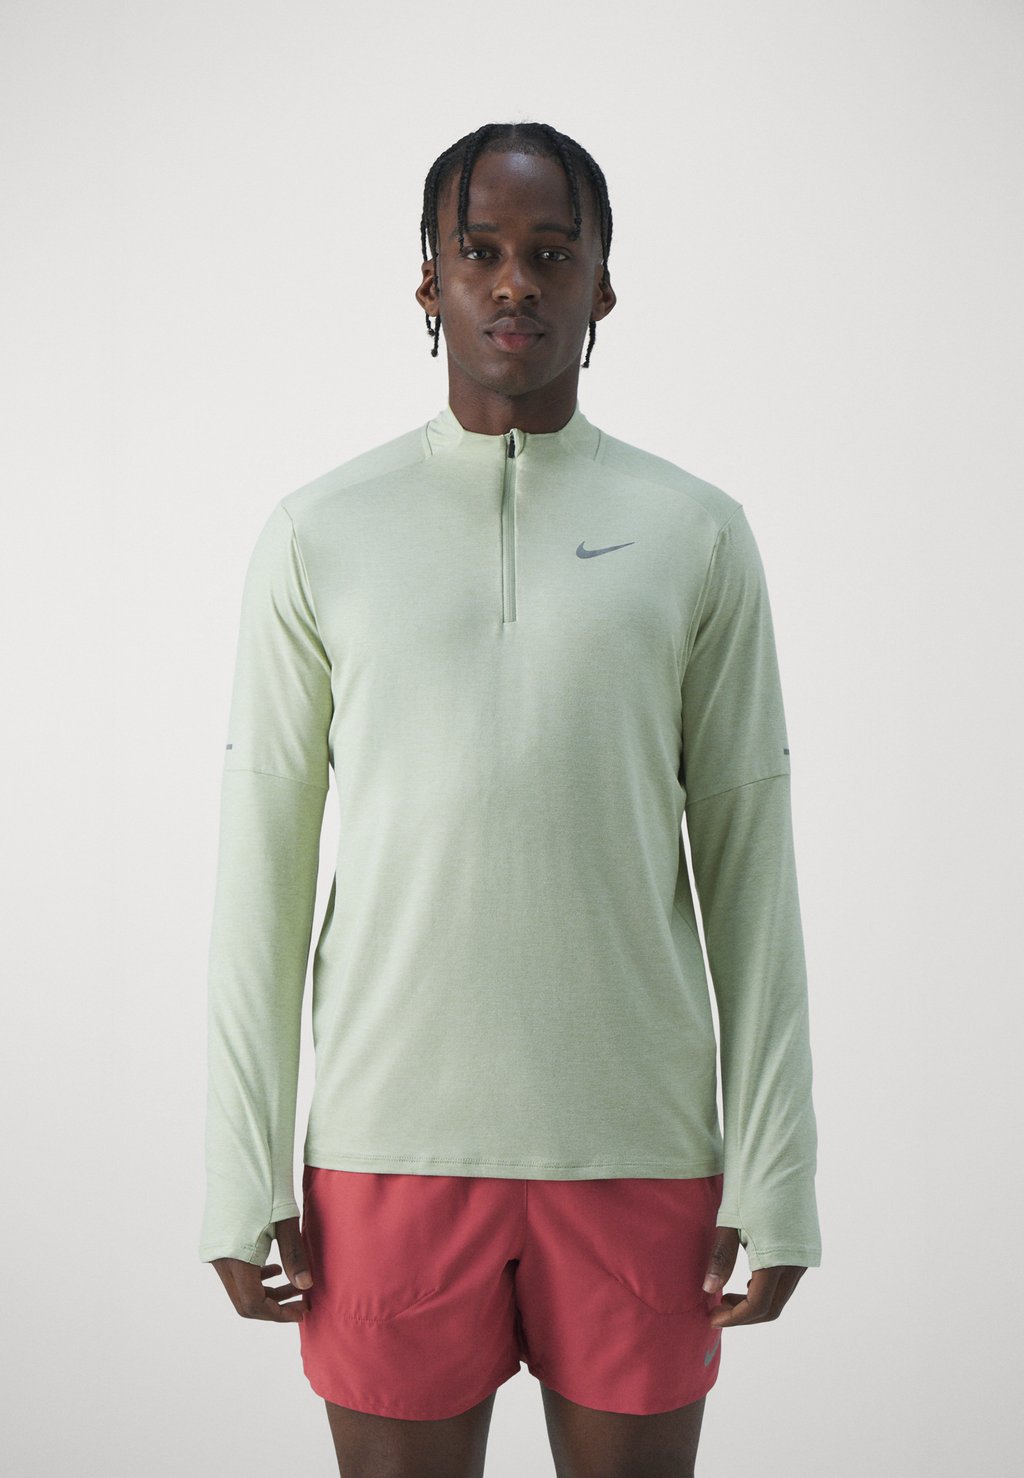 Футболка с длинным рукавом Nike, оливковая аура/морское стекло/светоотражающее серебро